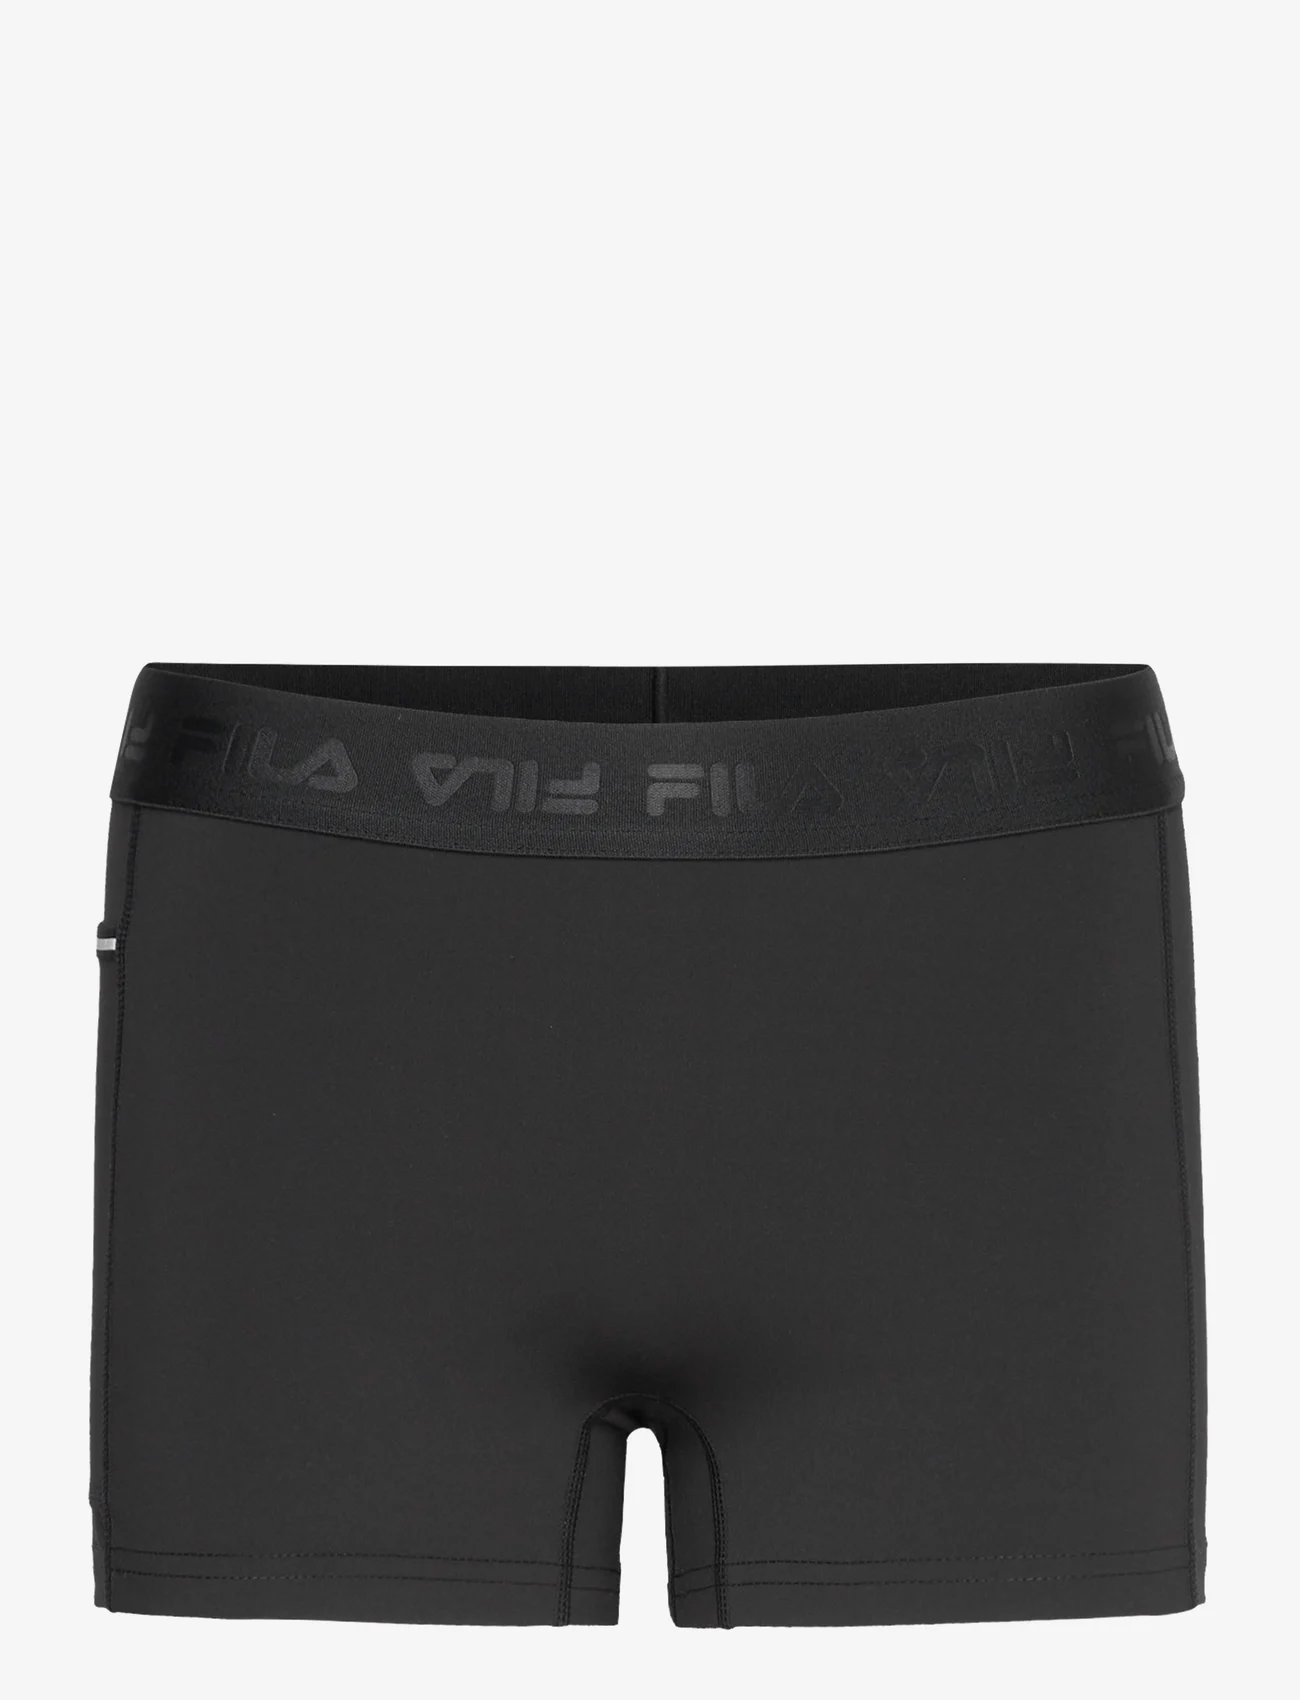 FILA - RIANXO running short tights - die niedrigsten preise - black - 0